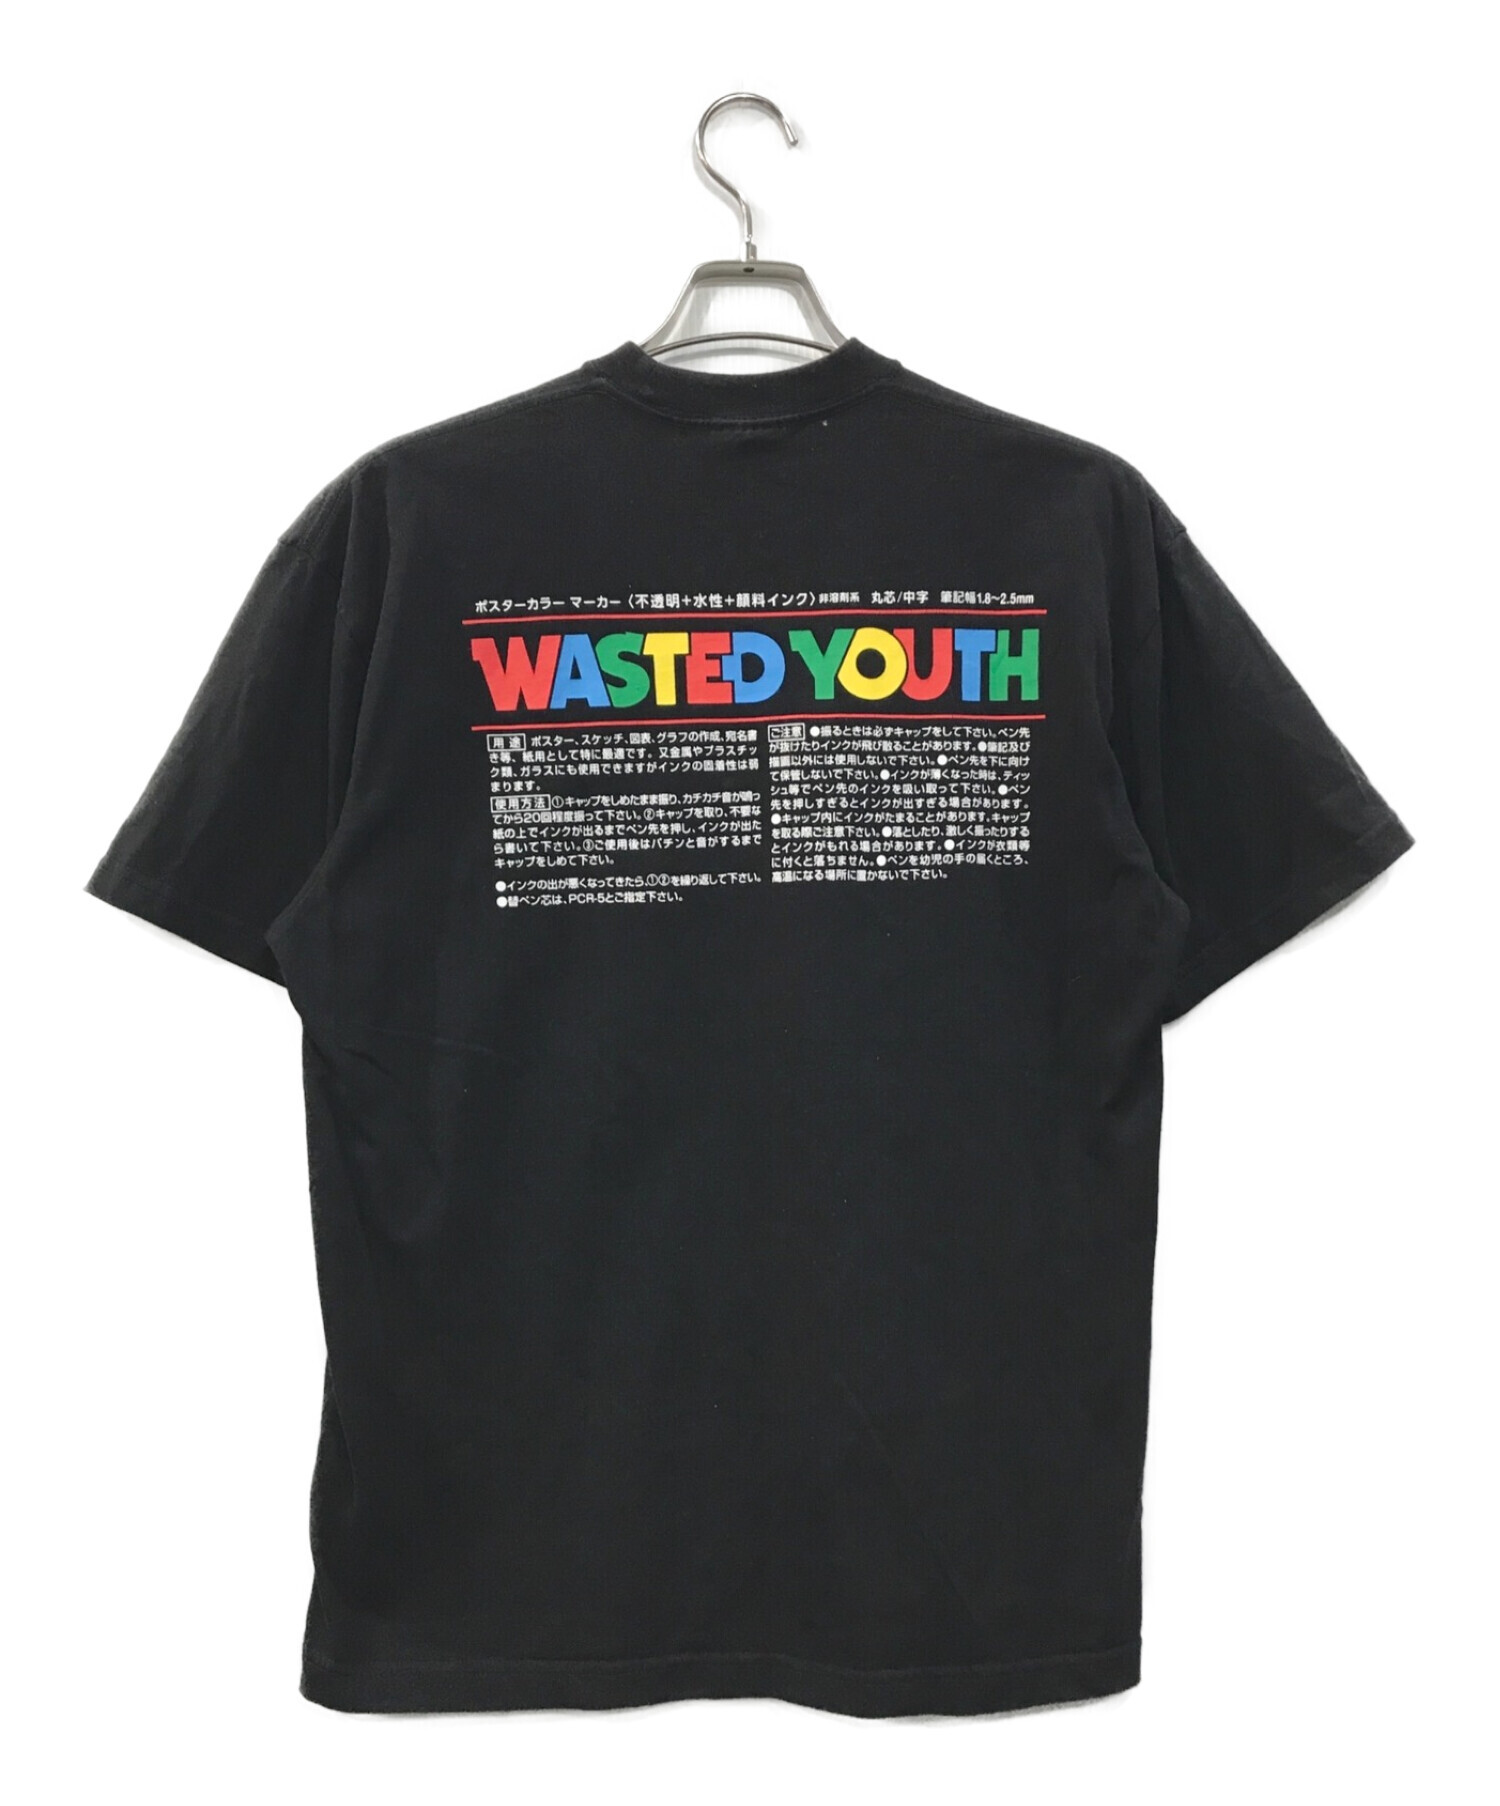 wasted youth (ウェイステッド ユース) TOKiON POSCA ポスカ Tシャツ ブラック サイズ:M